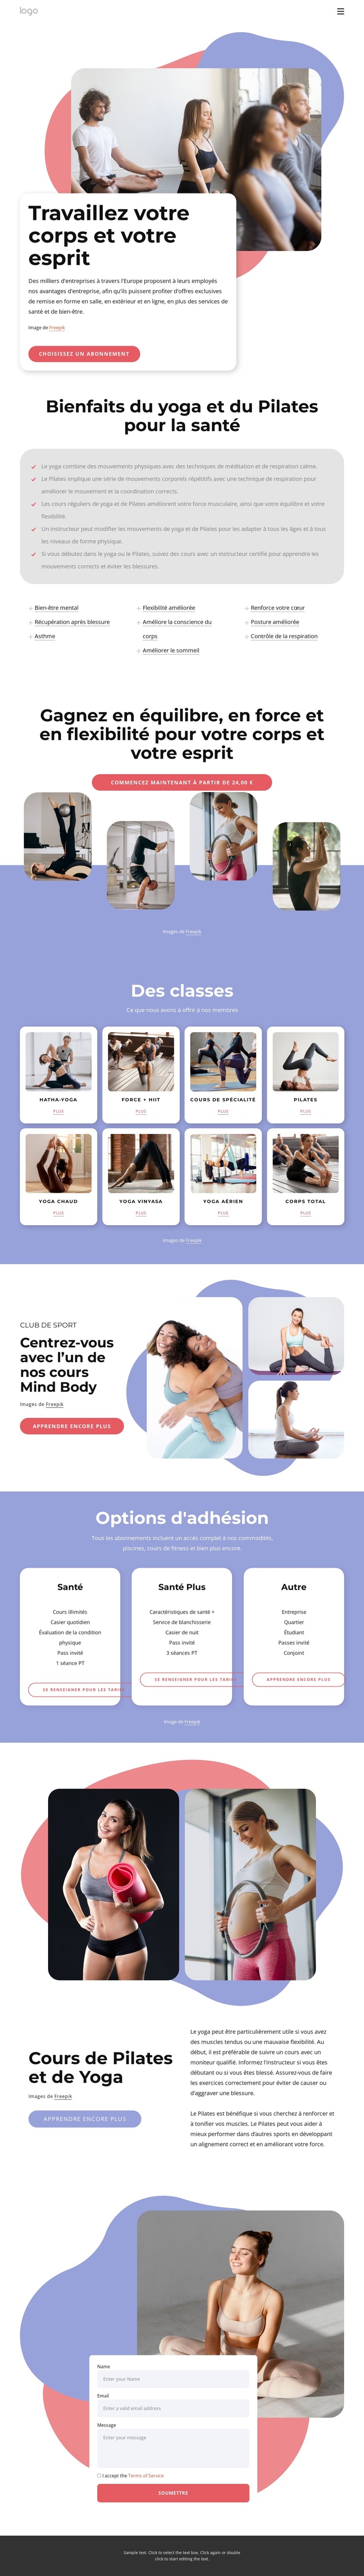 Cours de Pilates et de yoga Thème WordPress